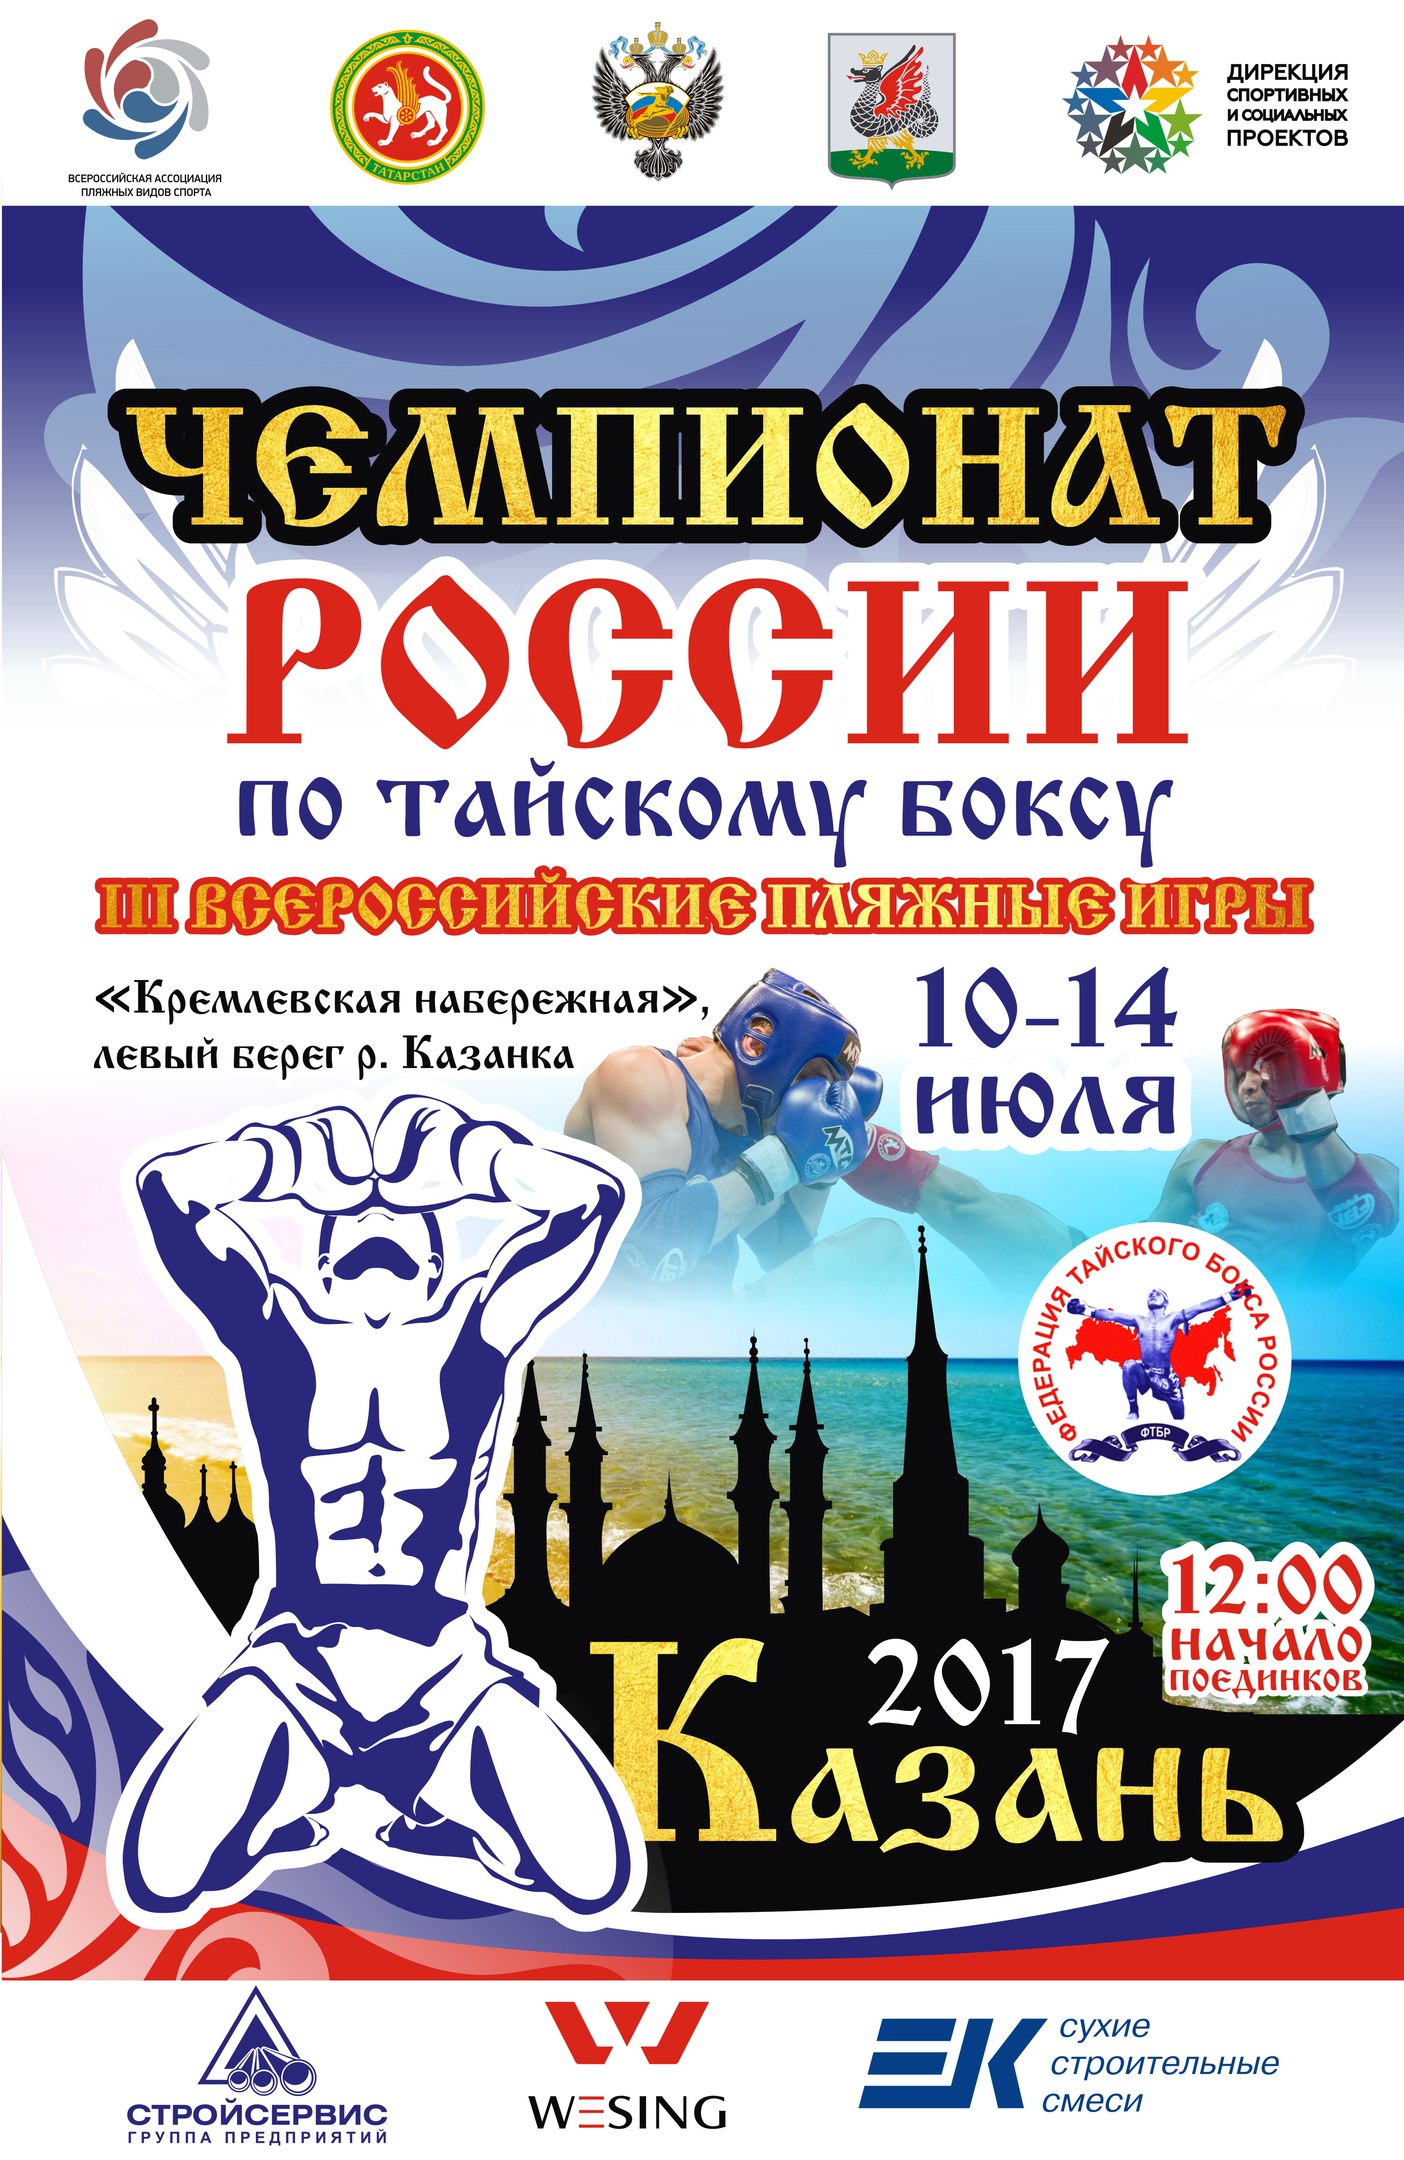 Chempionat Rossii po Tayskomu boksu i 3 plyajnie igri Kazan 2017